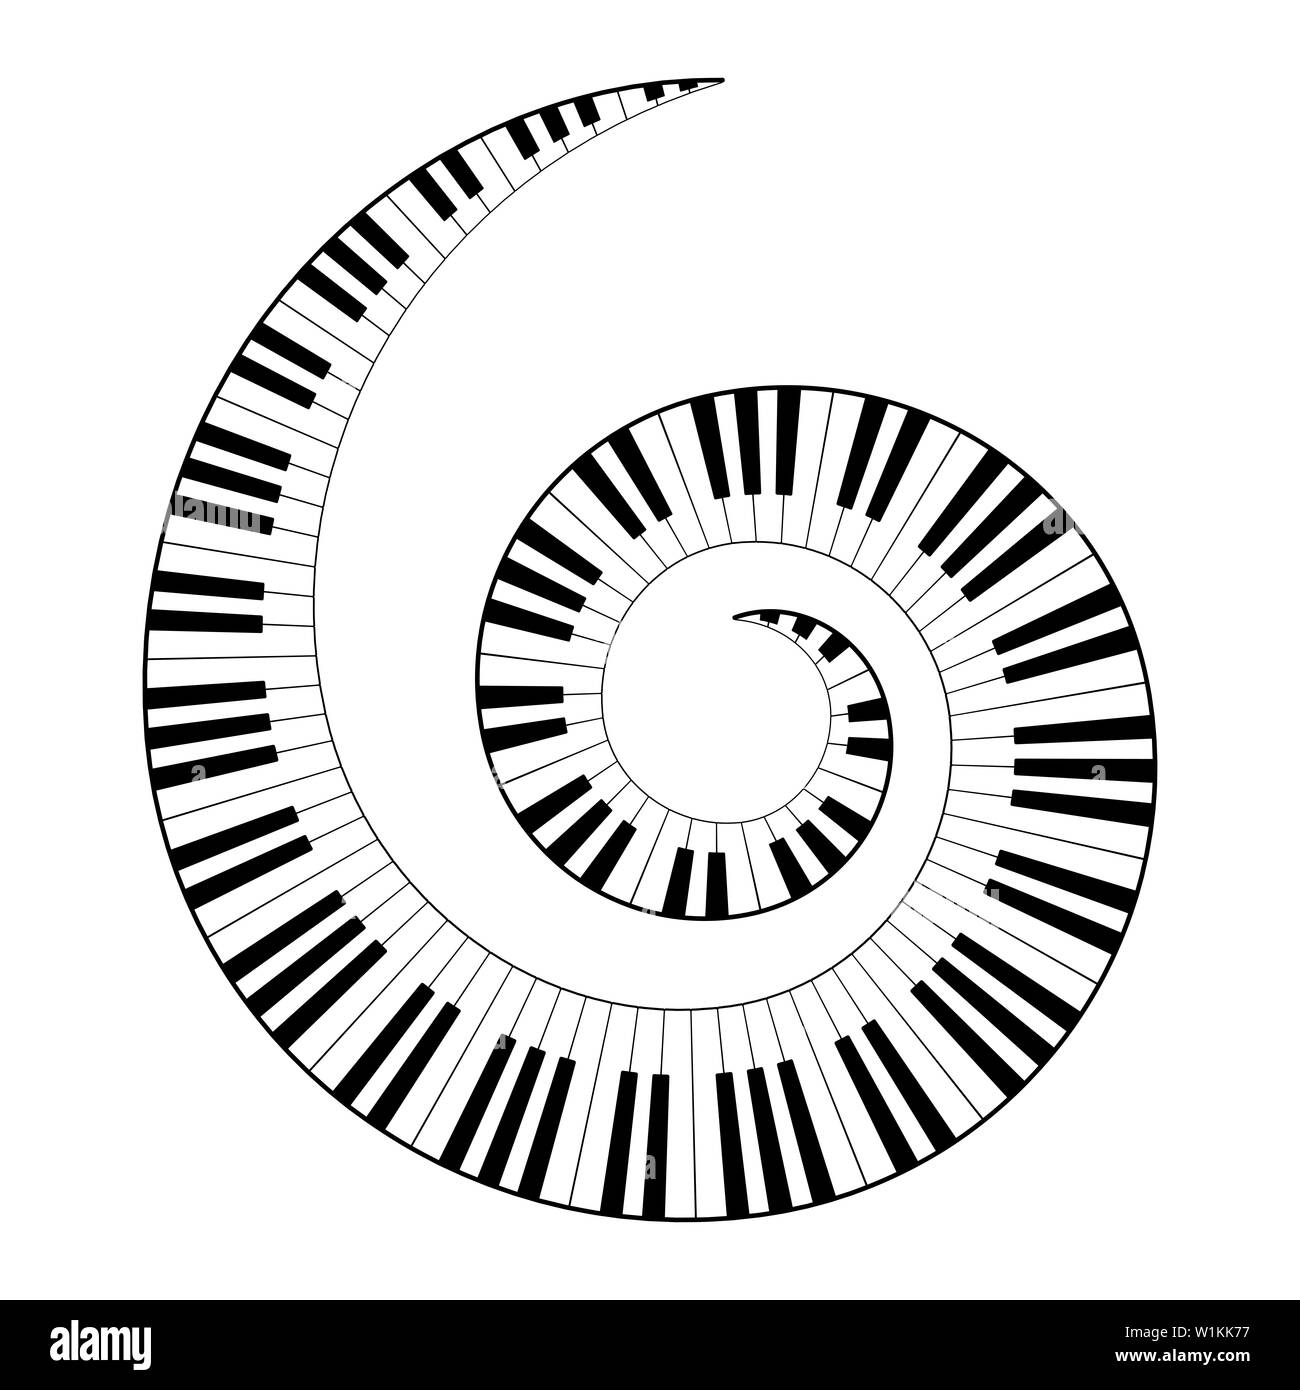 Tastiera musicale a spirale, costruita a partire da modelli di ottava, in bianco e nero pianoforte i tasti della tastiera, sagomata nel motivo ripetuto. Illustrazione. Foto Stock